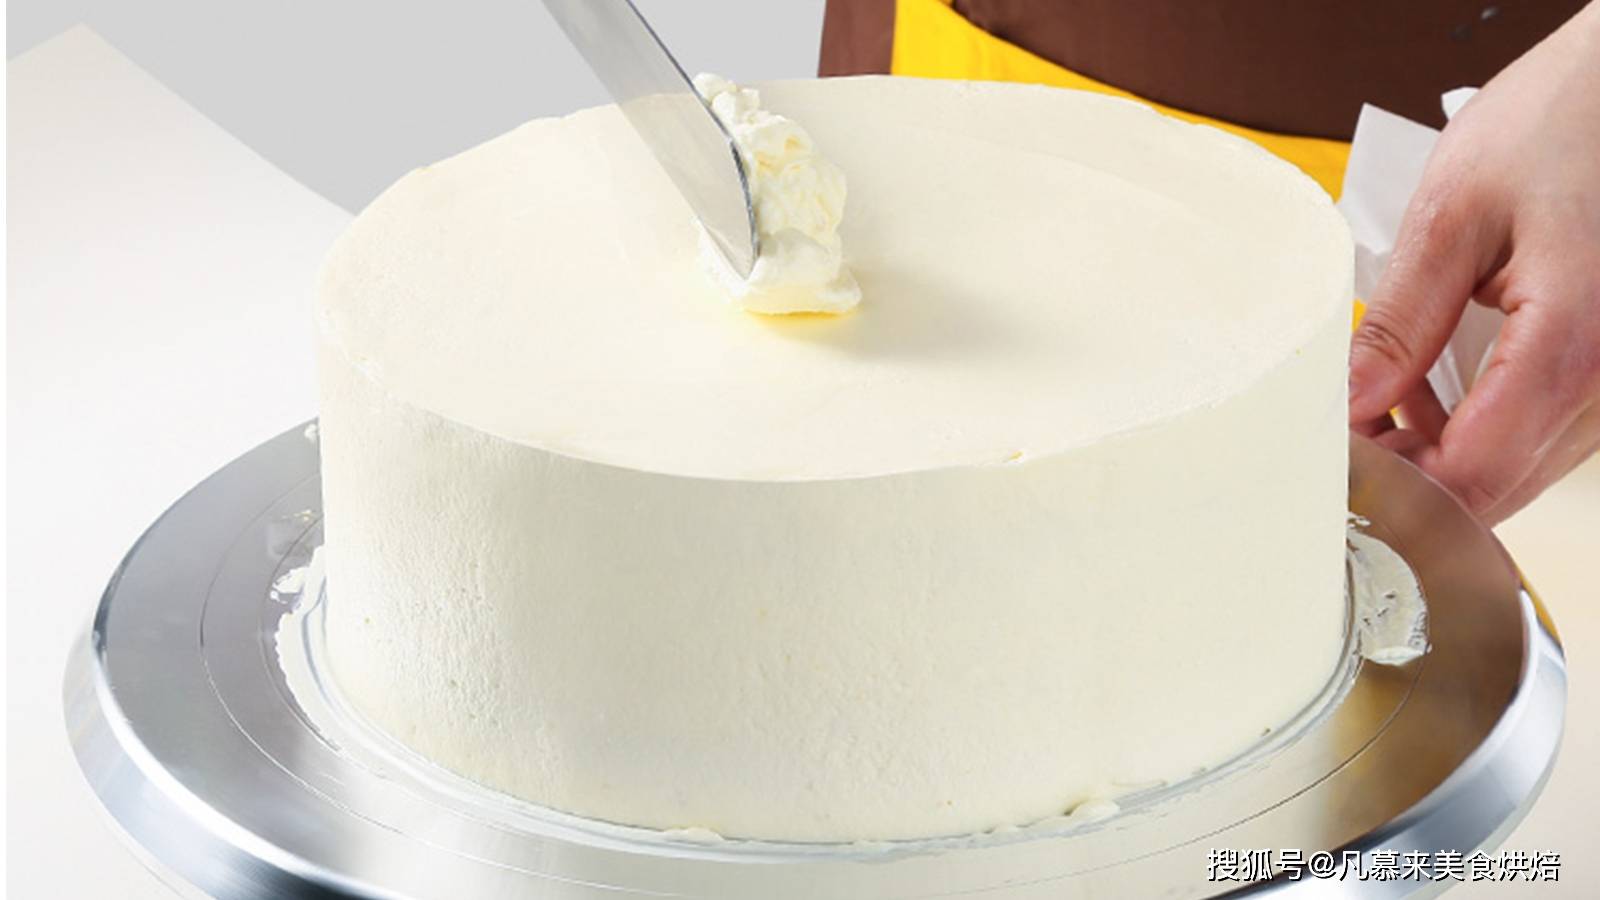 原创裱花师必修基础课图文详解蛋糕抹面的技巧尤其动物奶油如何一刀收